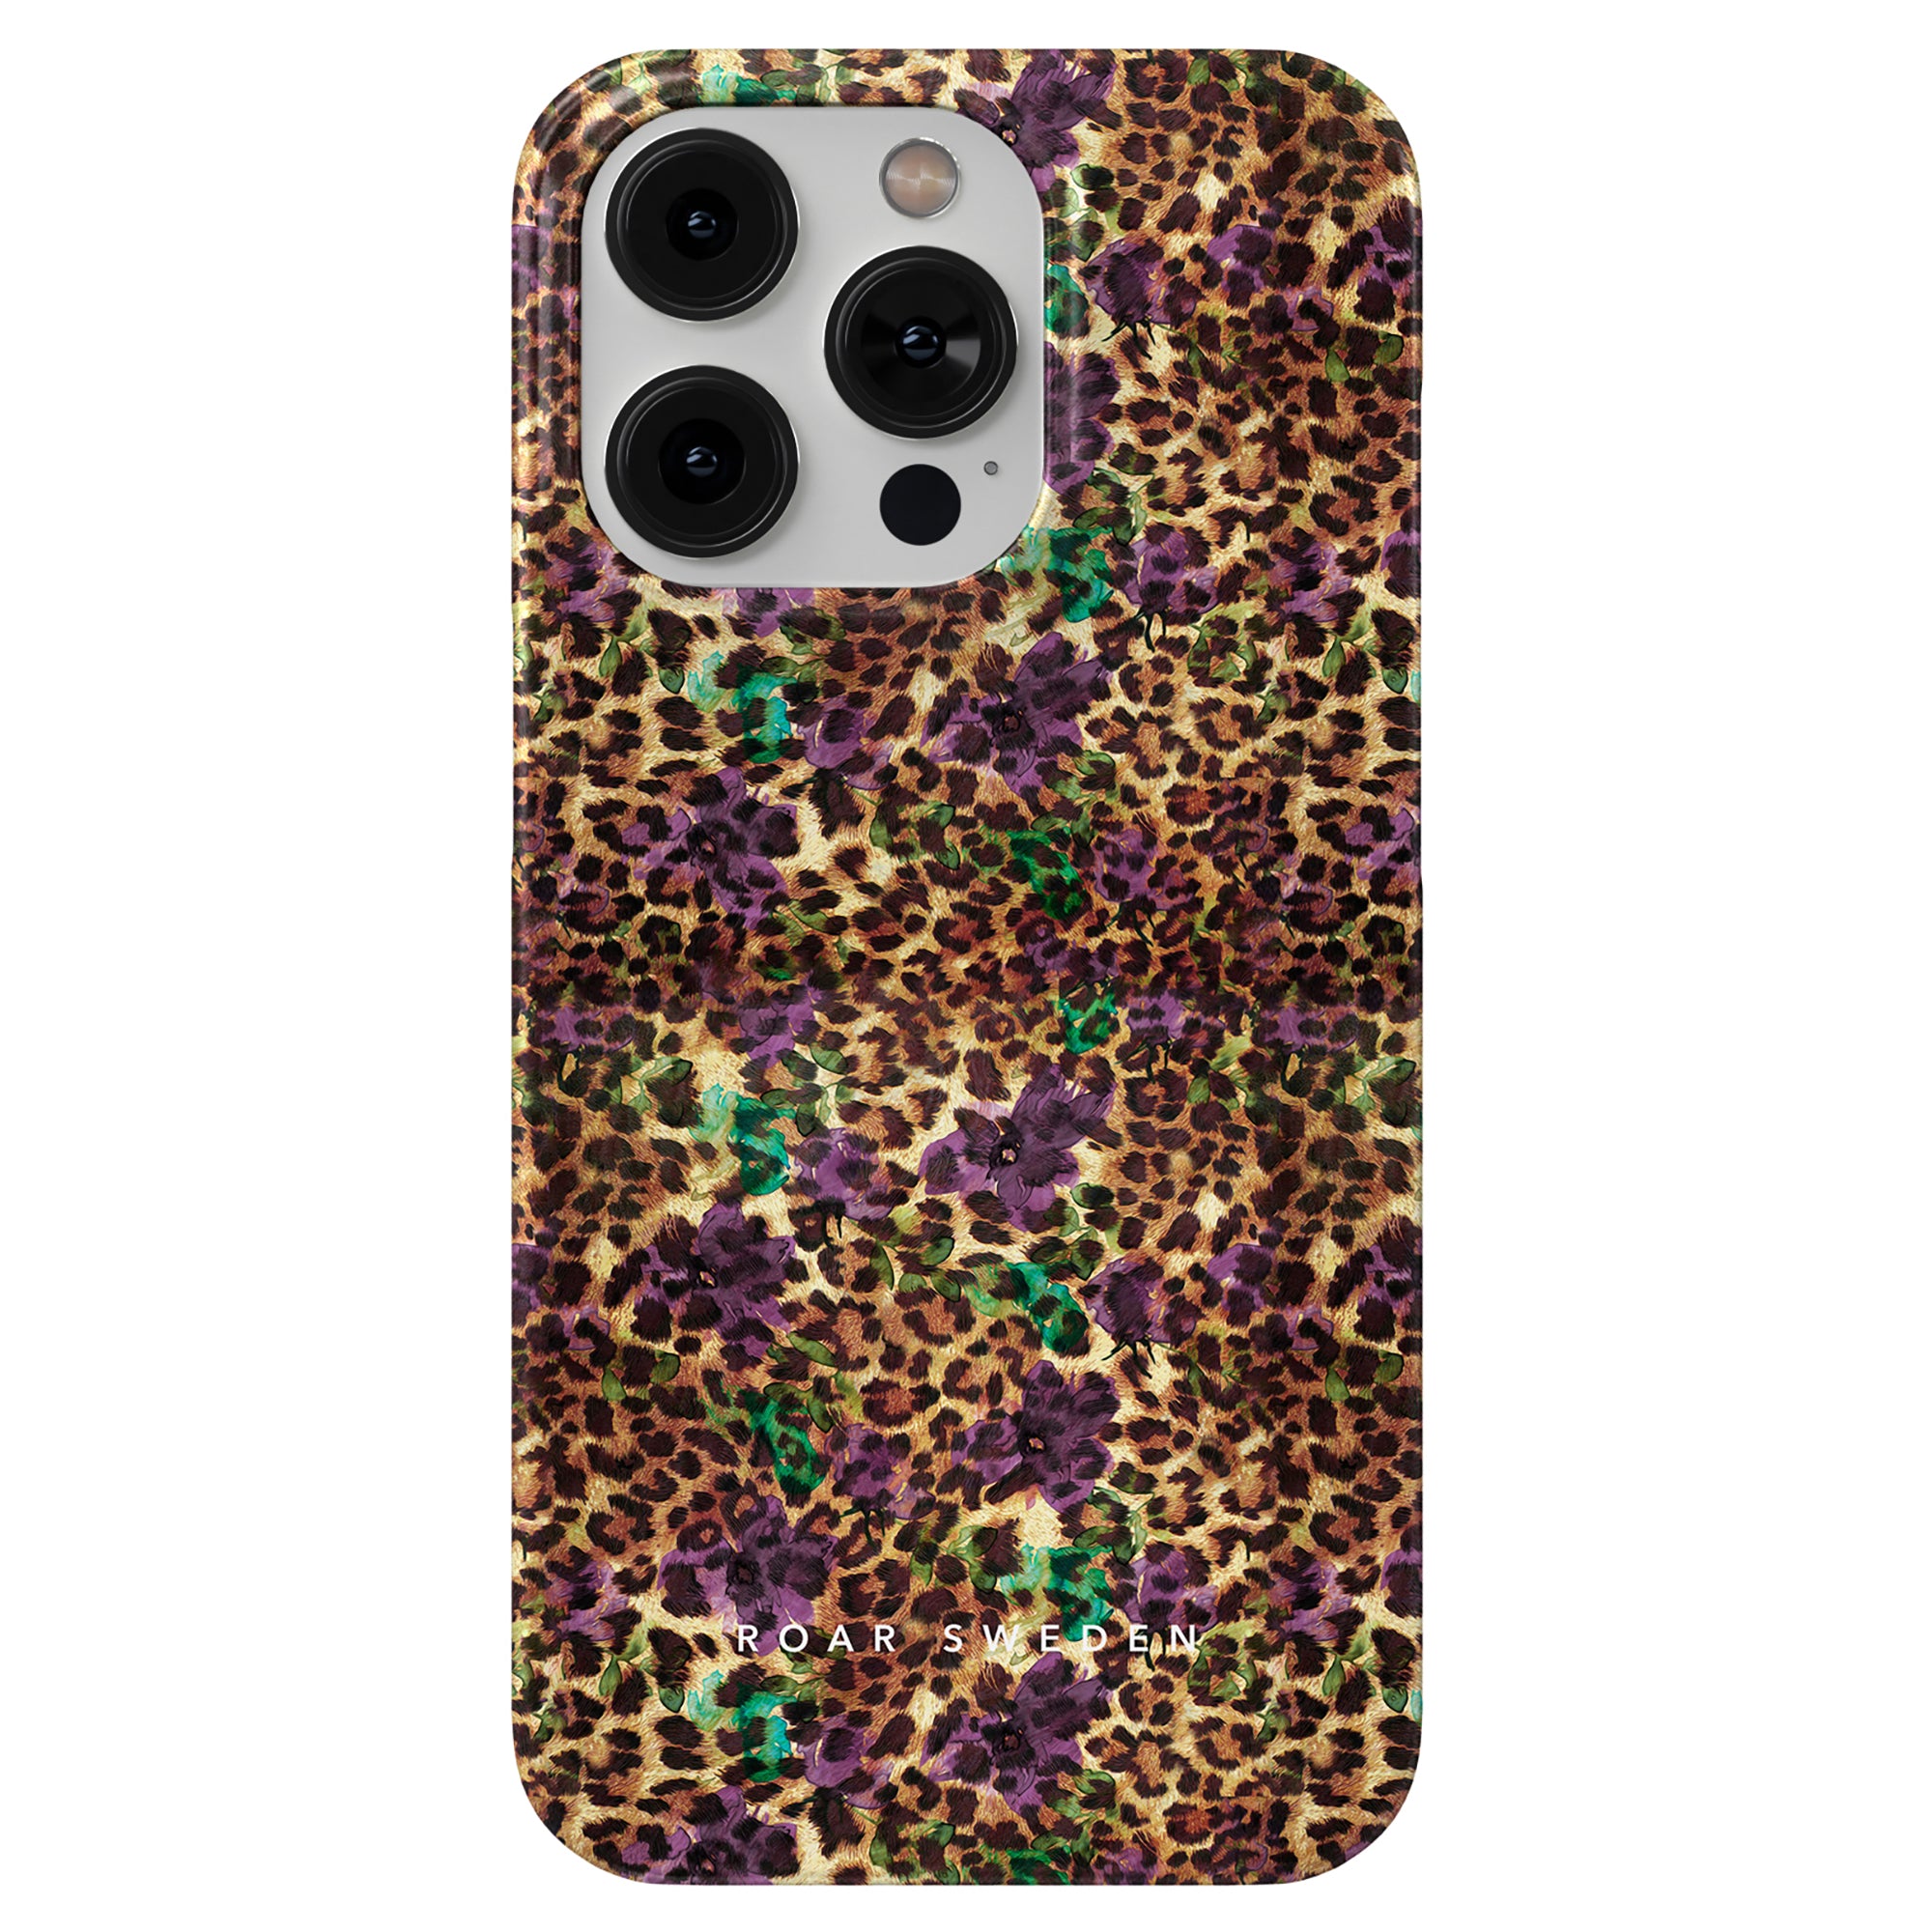 Produktbeskrivning: Förbättra din iPhone 11 Pro med detta trendiga Flower Leopard - Tunt fodral, med en levande kombination av lila och grönt. Perfekt designad för att ge både stil och skydd för din telefon.